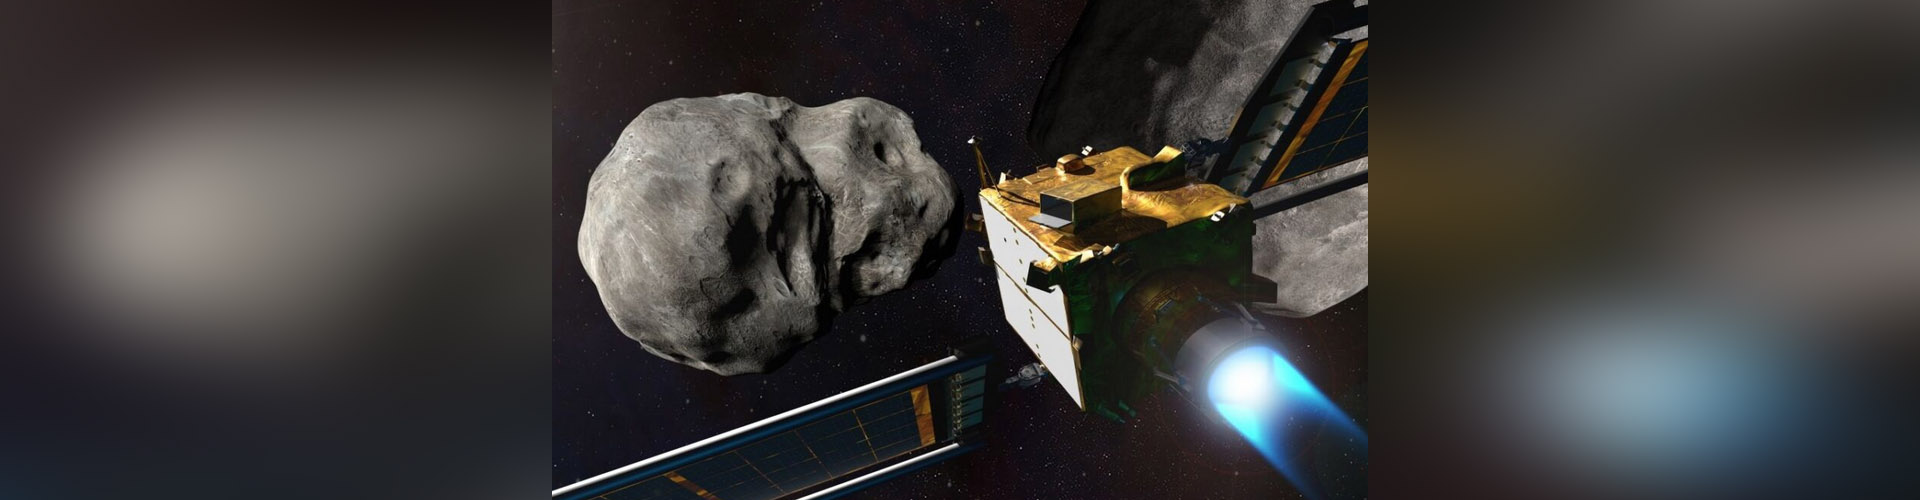 (VIDEO) DART fue un éxito pero ¿nos salvará cuando un asteroide se dirija a la Tierra?